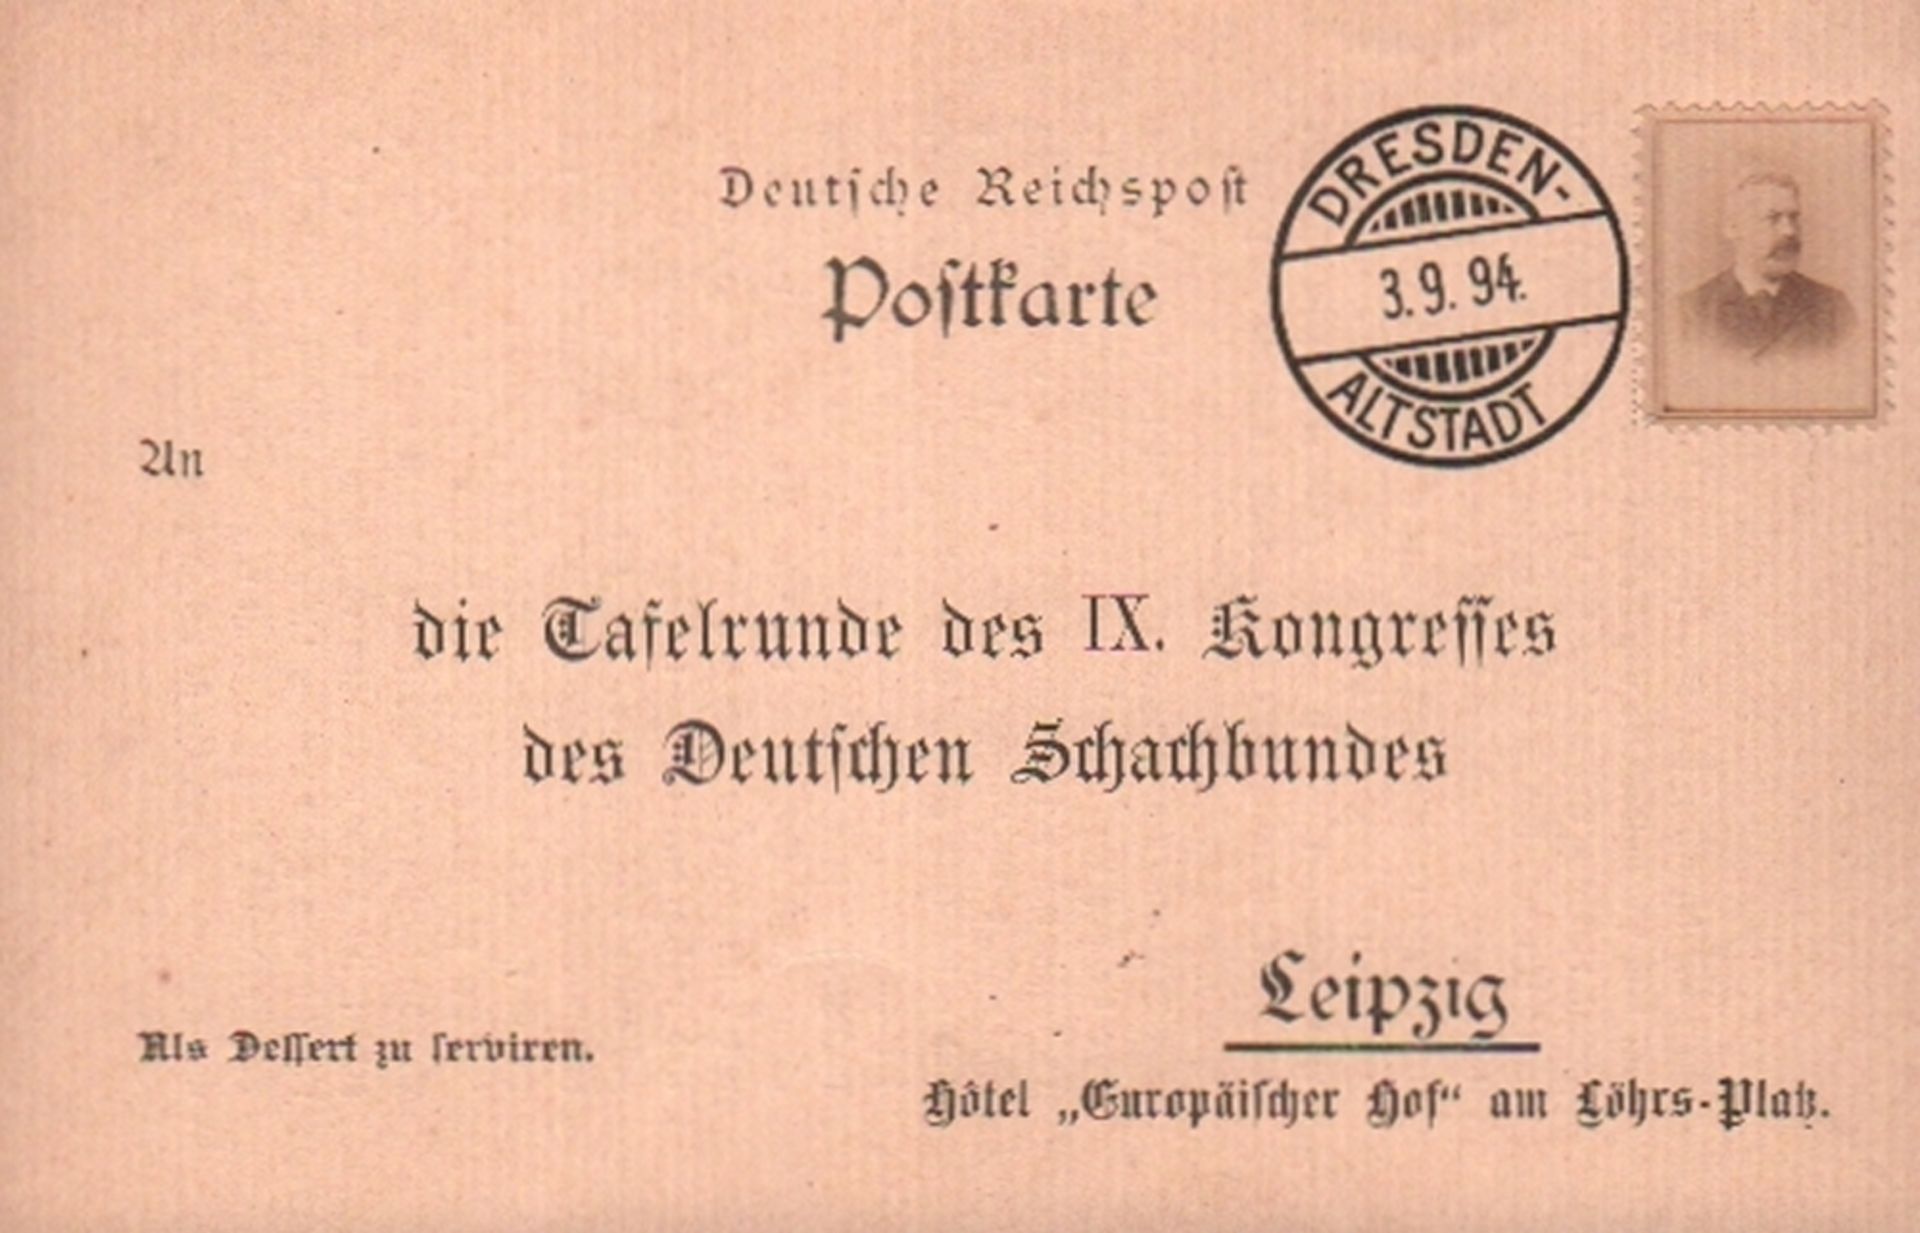 Postkarte. Leipzig 1894. Postalisch nicht gelaufene Postkarte mit humoristischem, schachbezogenen